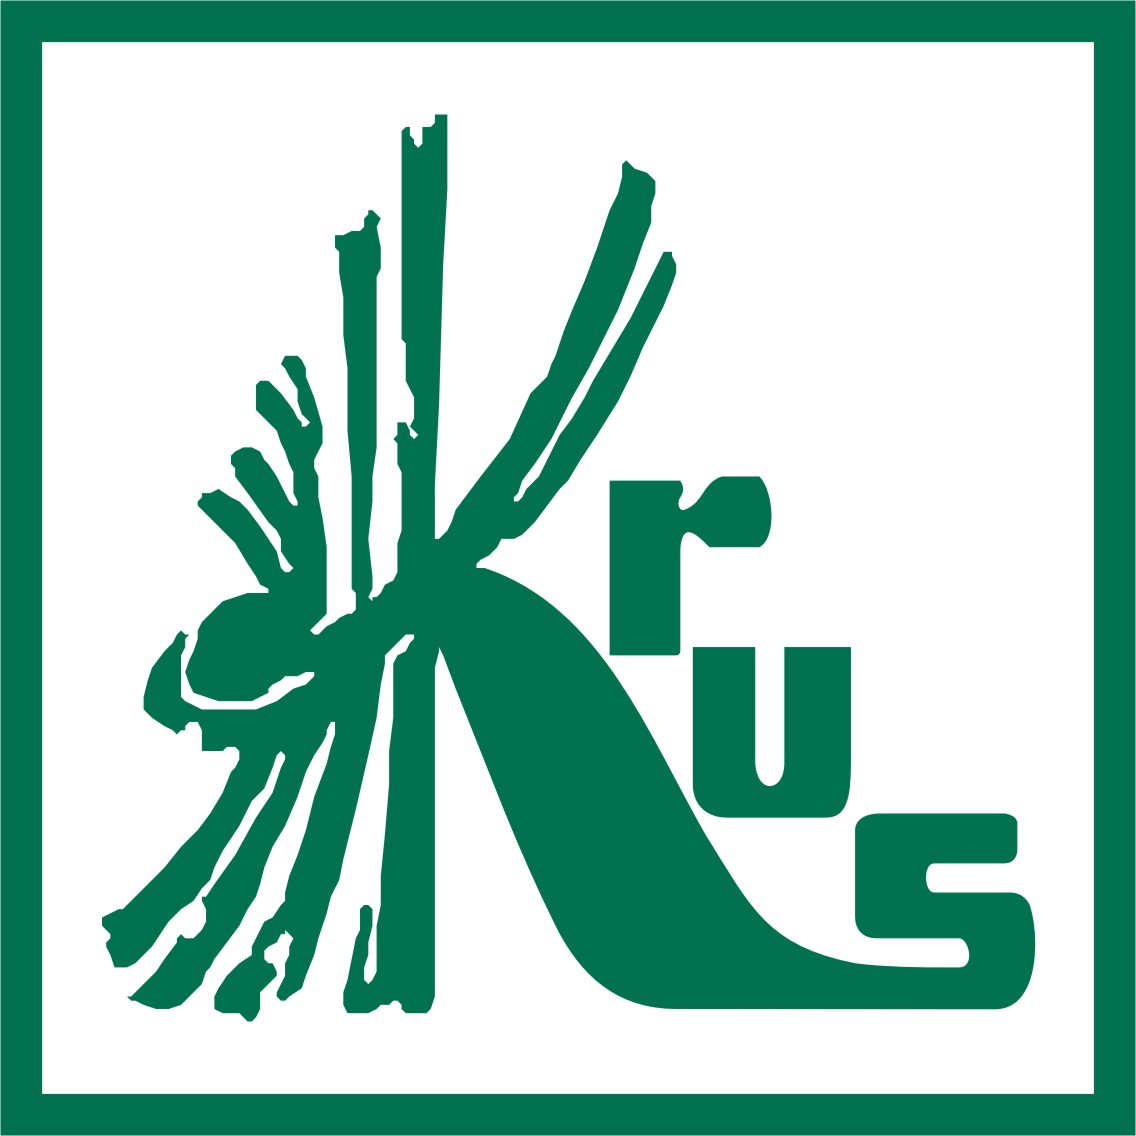 krus logo d